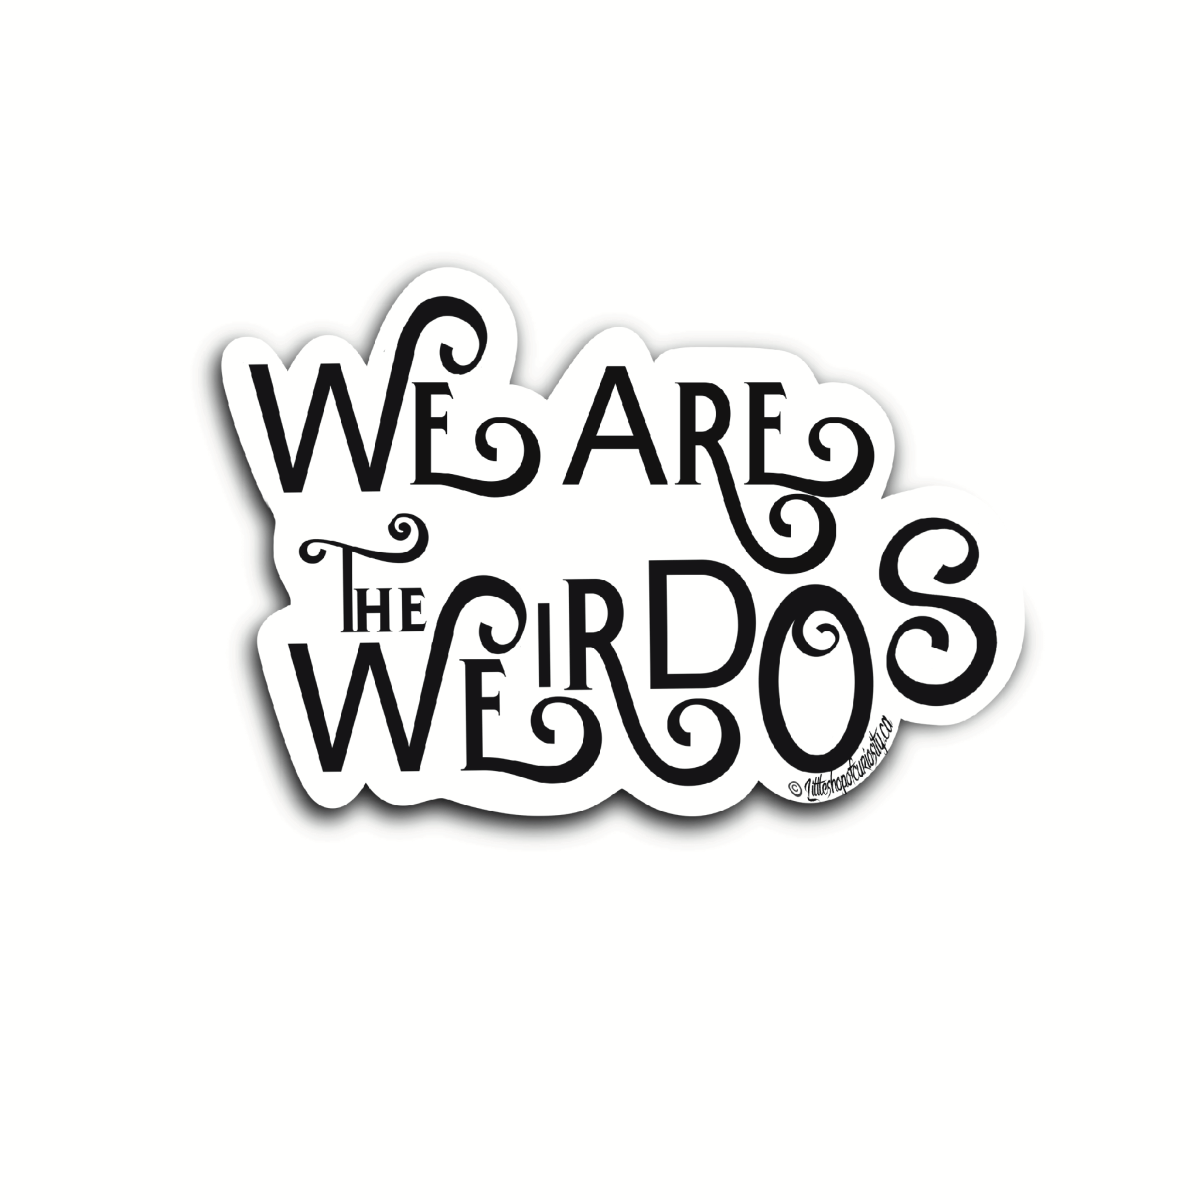 We Are The Weirdos Sticker - Black & White Sticker - Little Shop of Curiosity